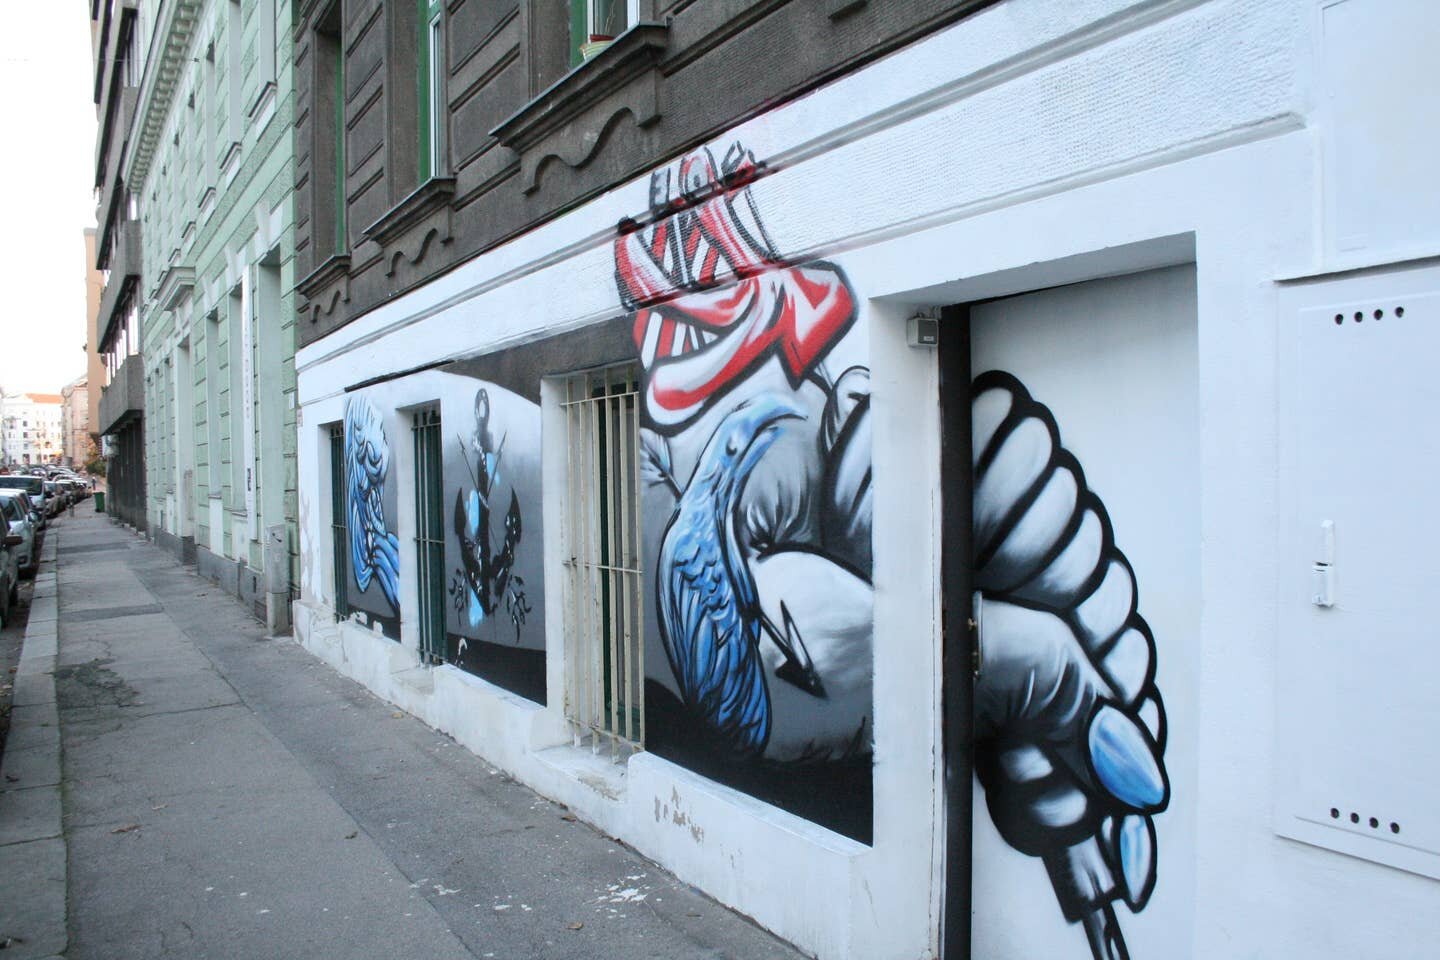 Artist's Studio Entrance in Vienna, Austria